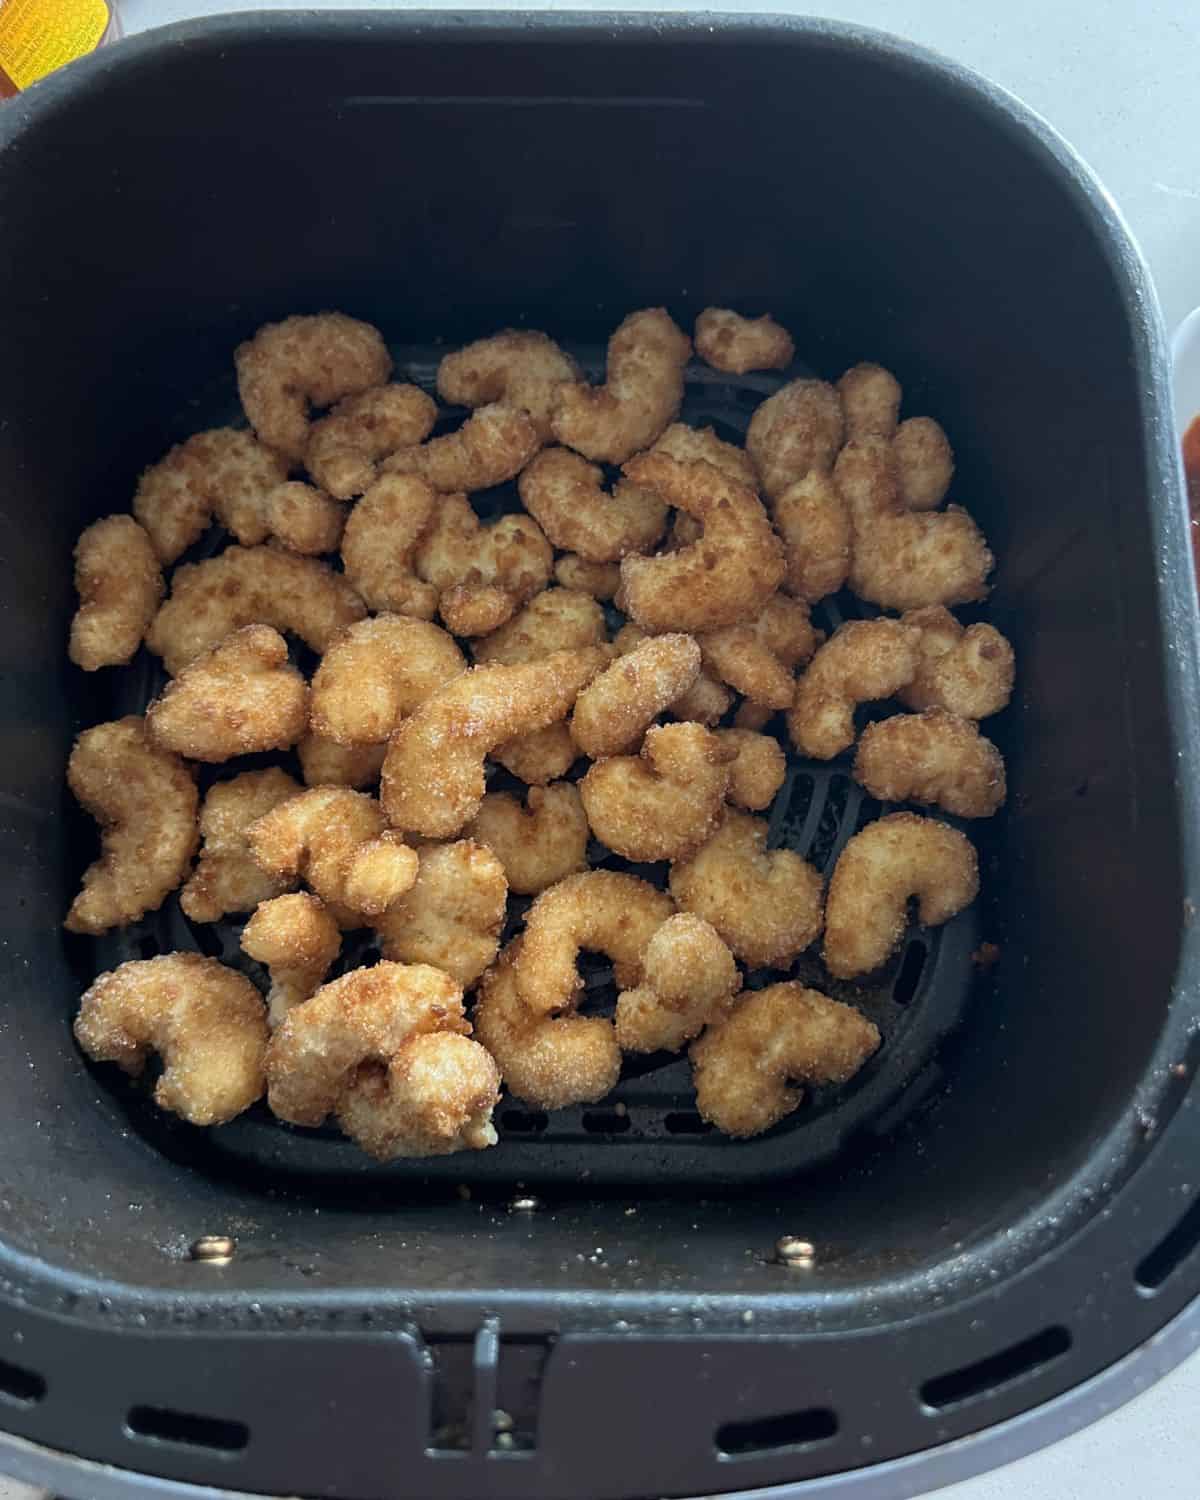 Popcorn shrimp in air fryer basket. 